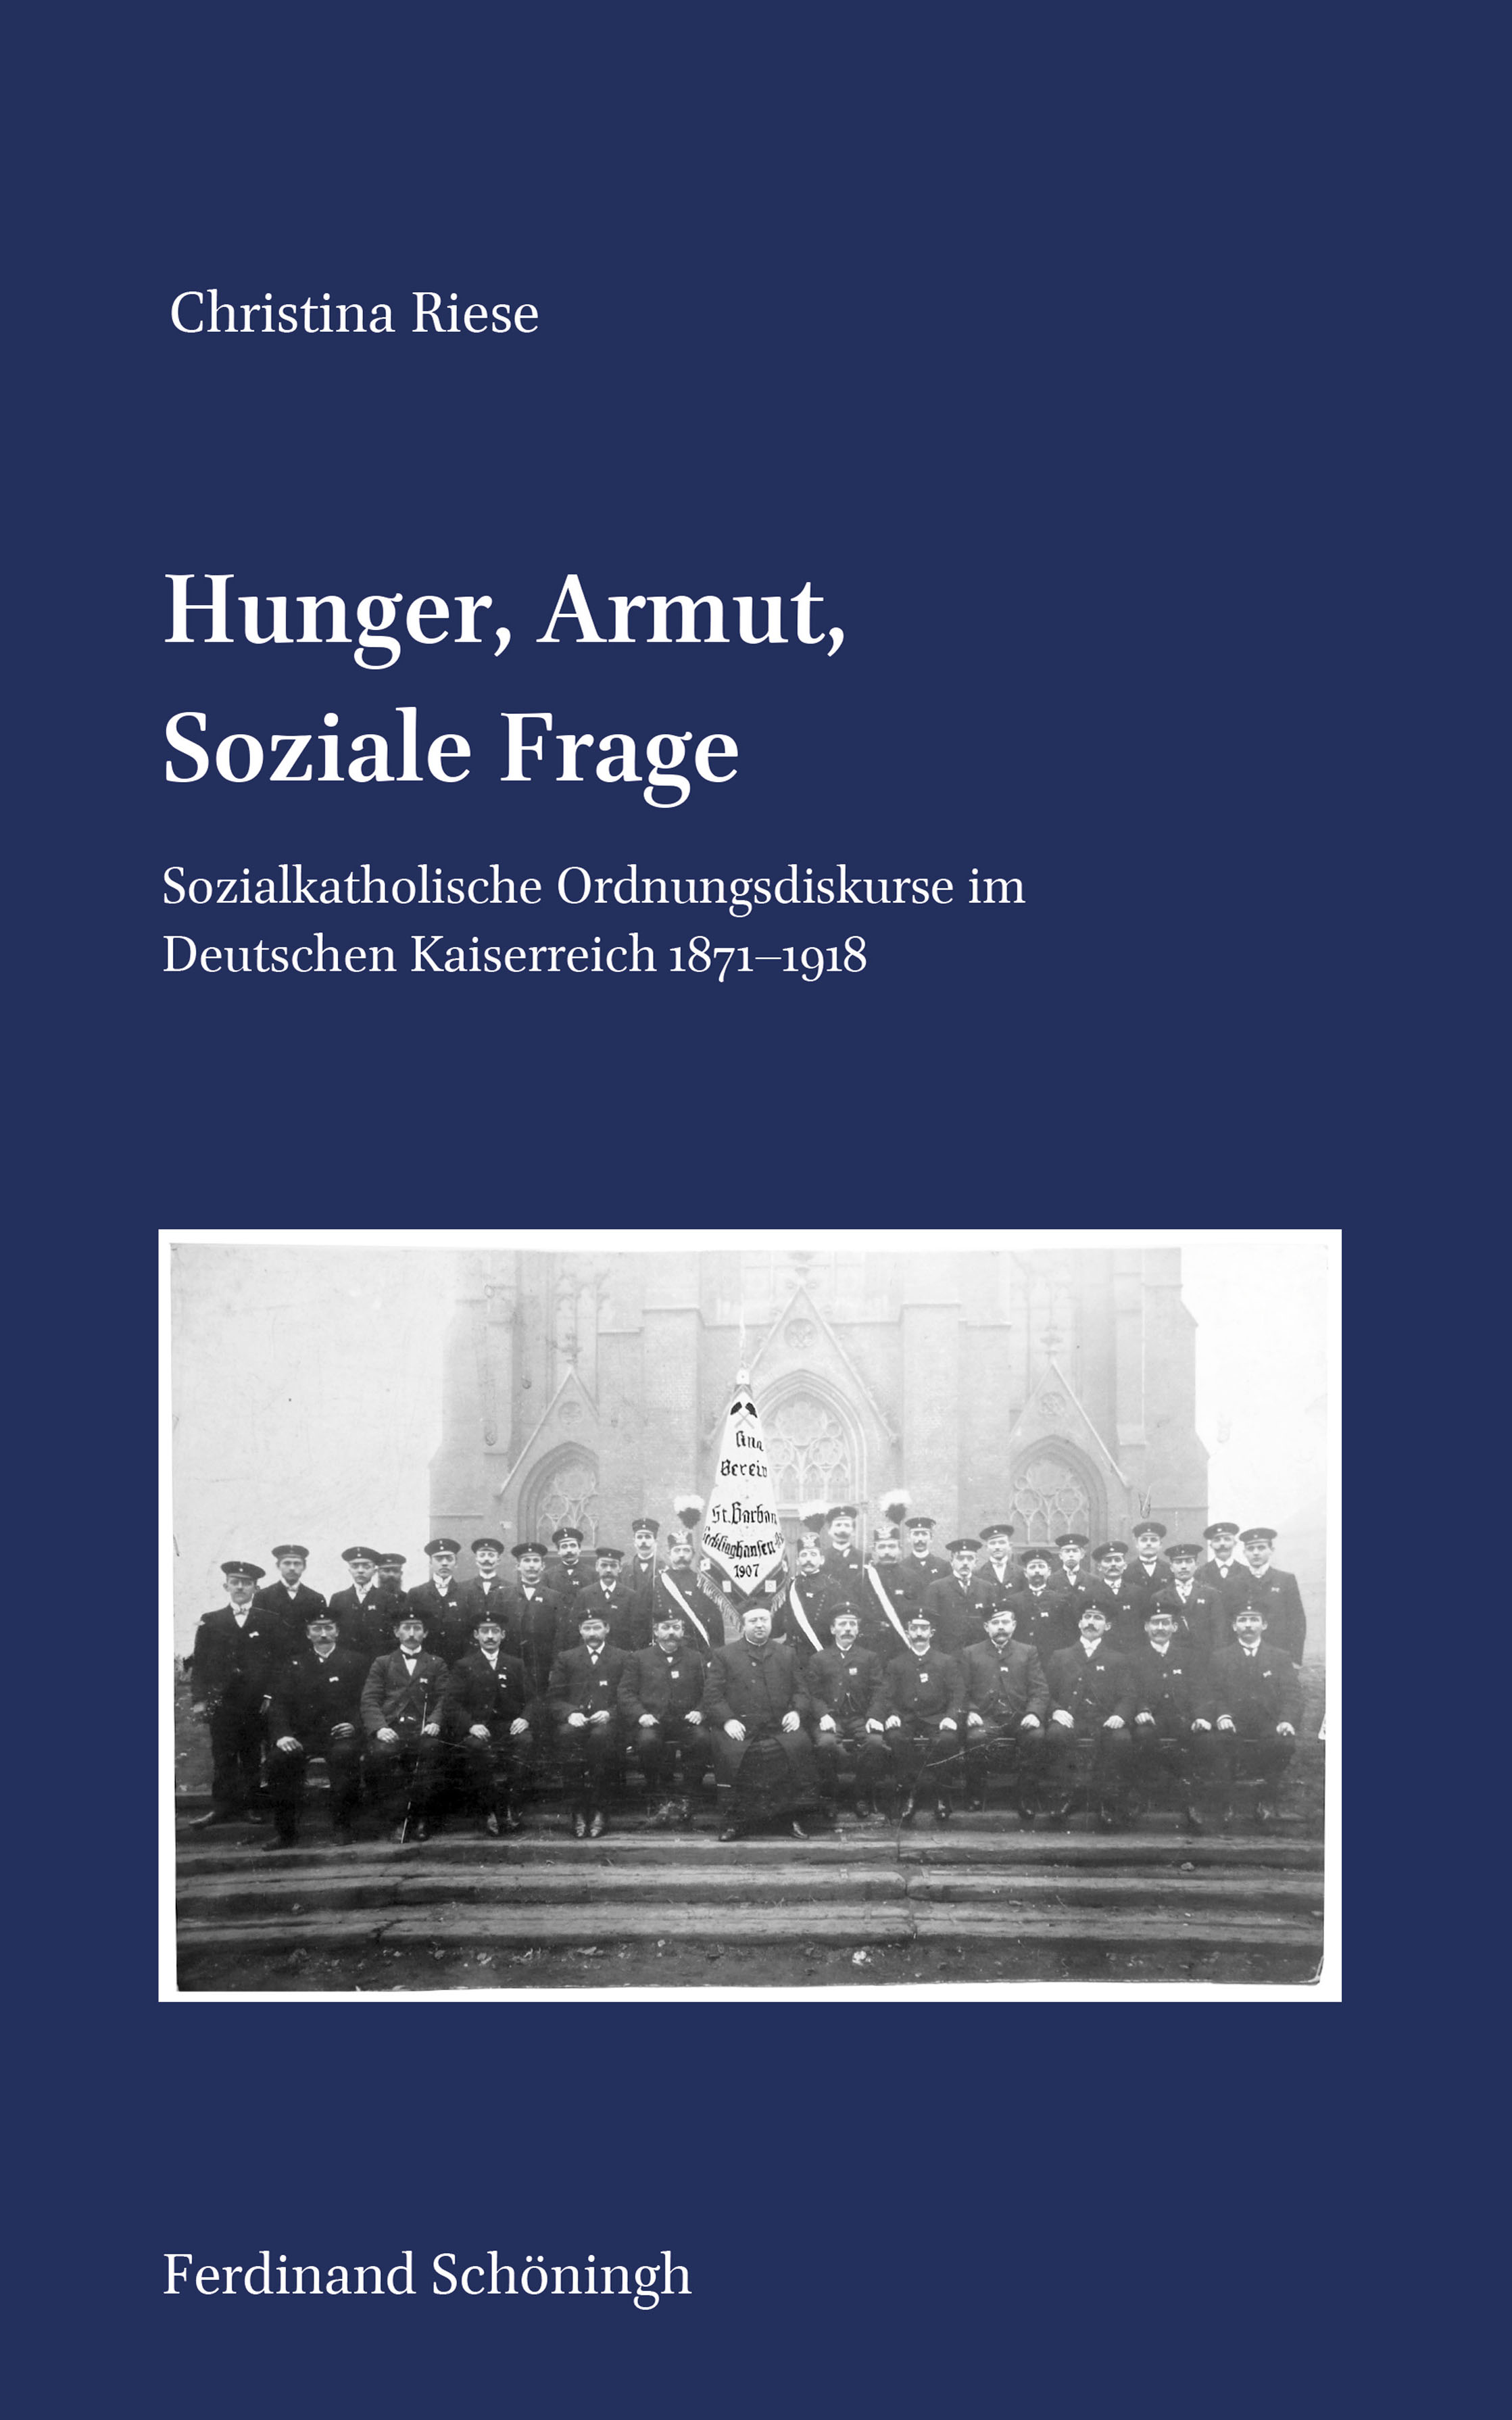 Christina Riese: Hunger, Armut, Soziale Frage. Sozialkatholische Ordnungsdiskurse im Deutschen Kaiserreich 1871–1918.